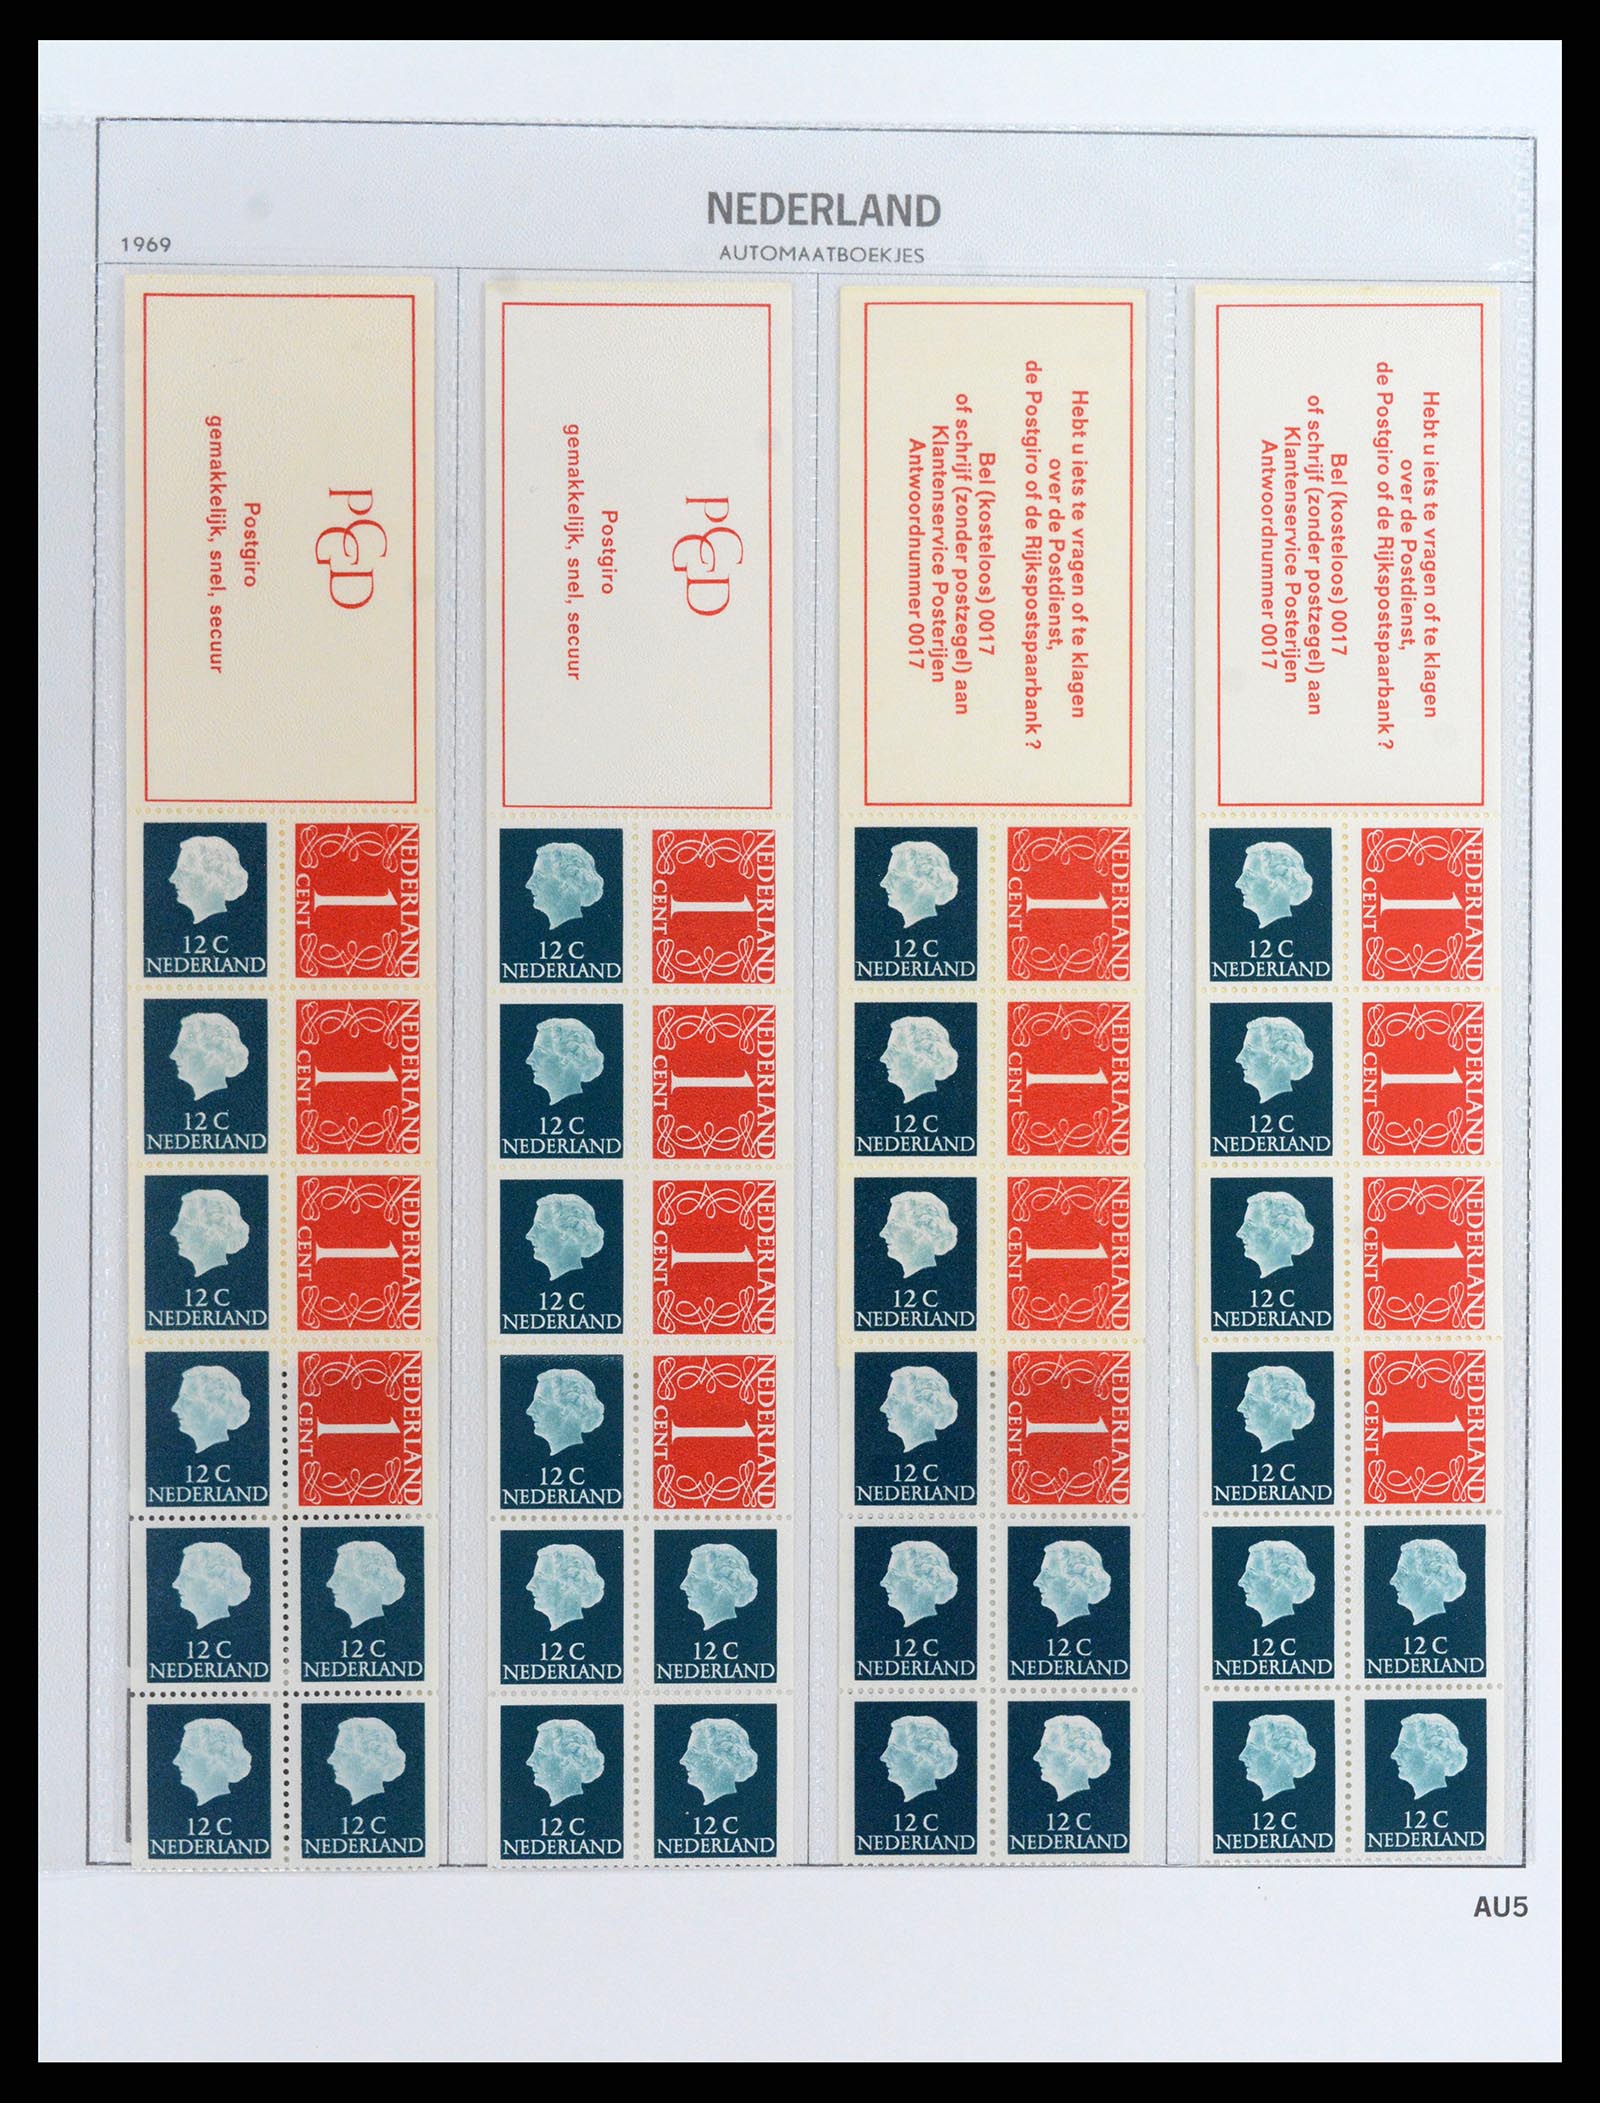 37871 005 - Stamp Collection 37871 Netherlands stampbooklets 1964-2000.